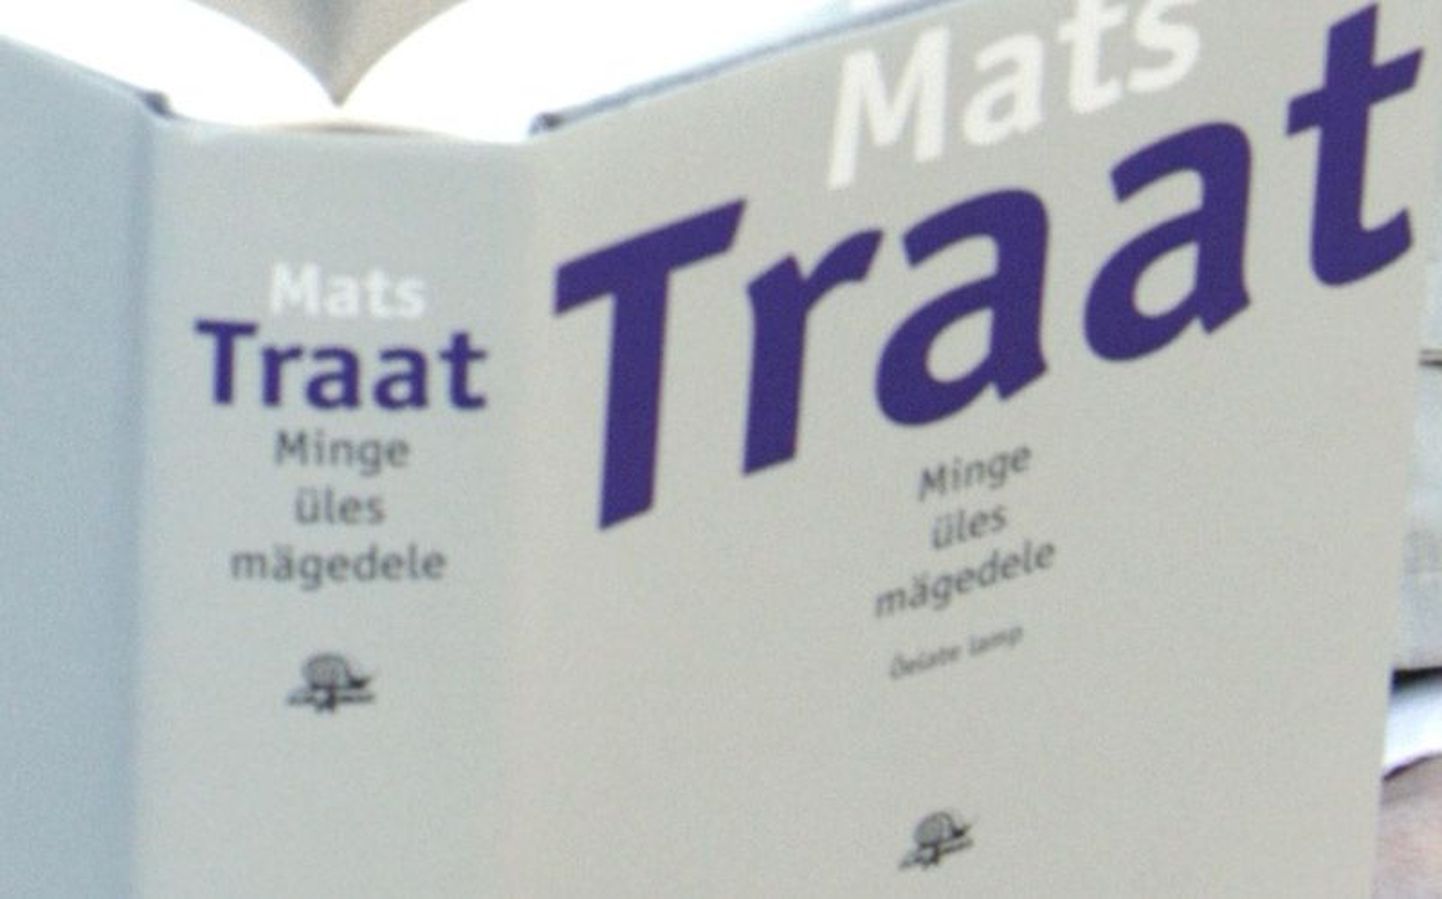 Raamat
Mats Traat «Minge üles mägedele» 4. köide  
«Õelate lamp», Tartu, Ilmamaa 2010, 700 lk